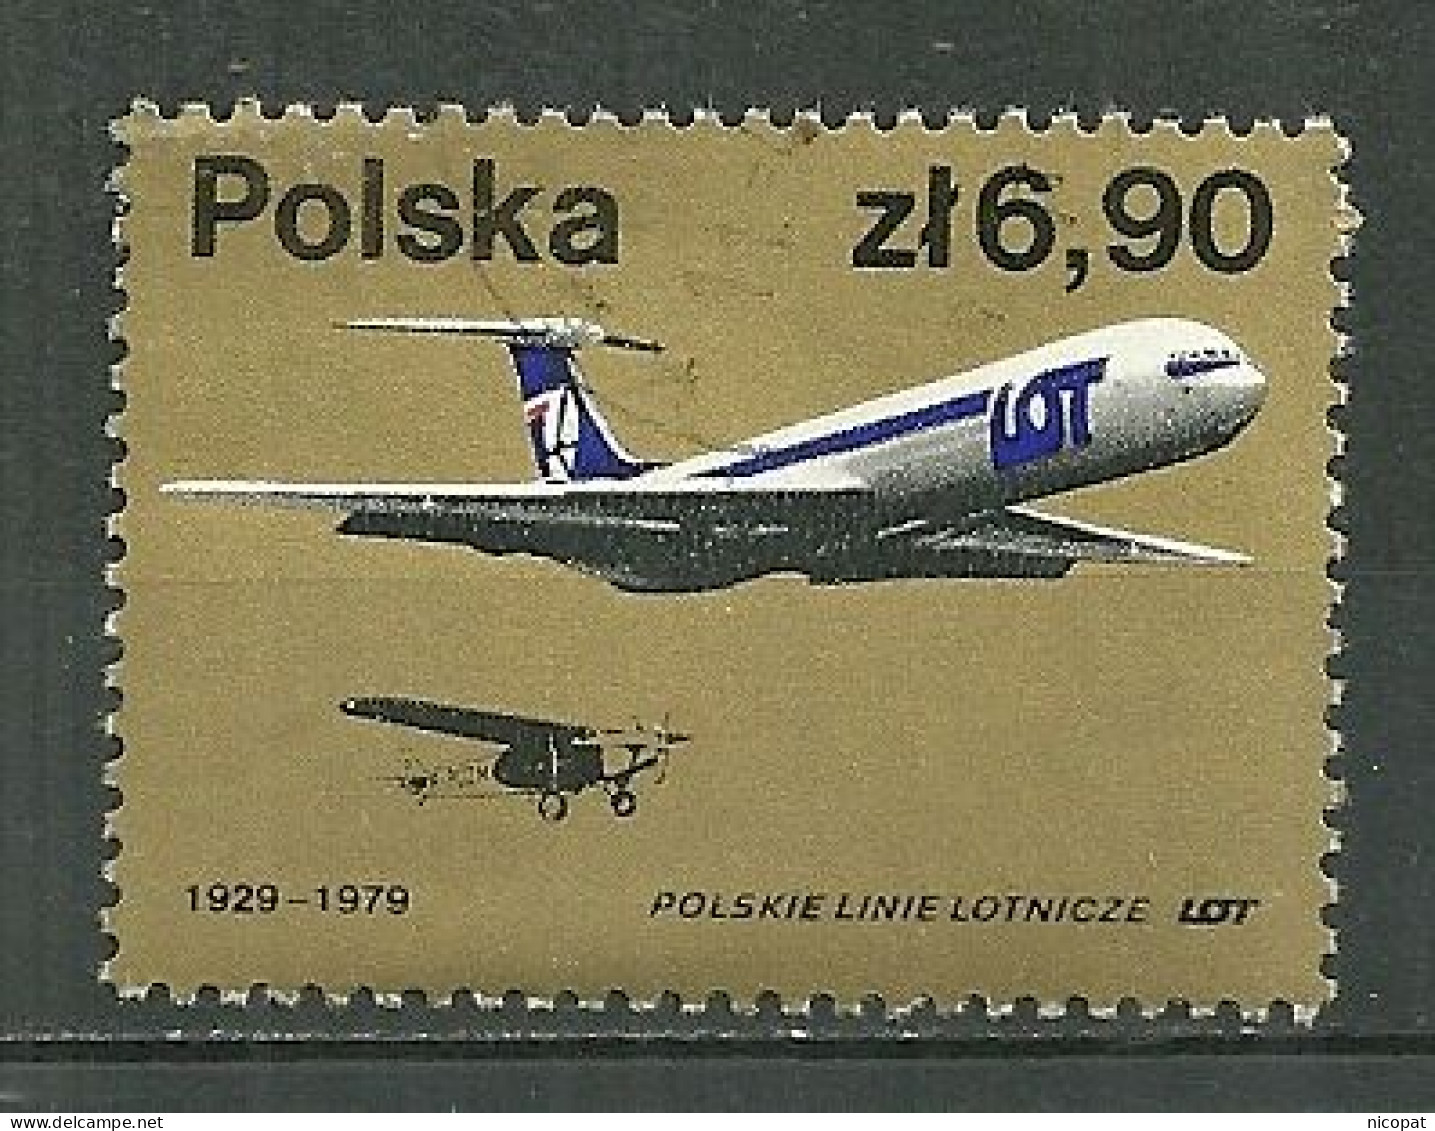 POLAND Oblitéré 2426 Anniversaire De La Compagnie Aérienne LOT Avion Aviation - Used Stamps